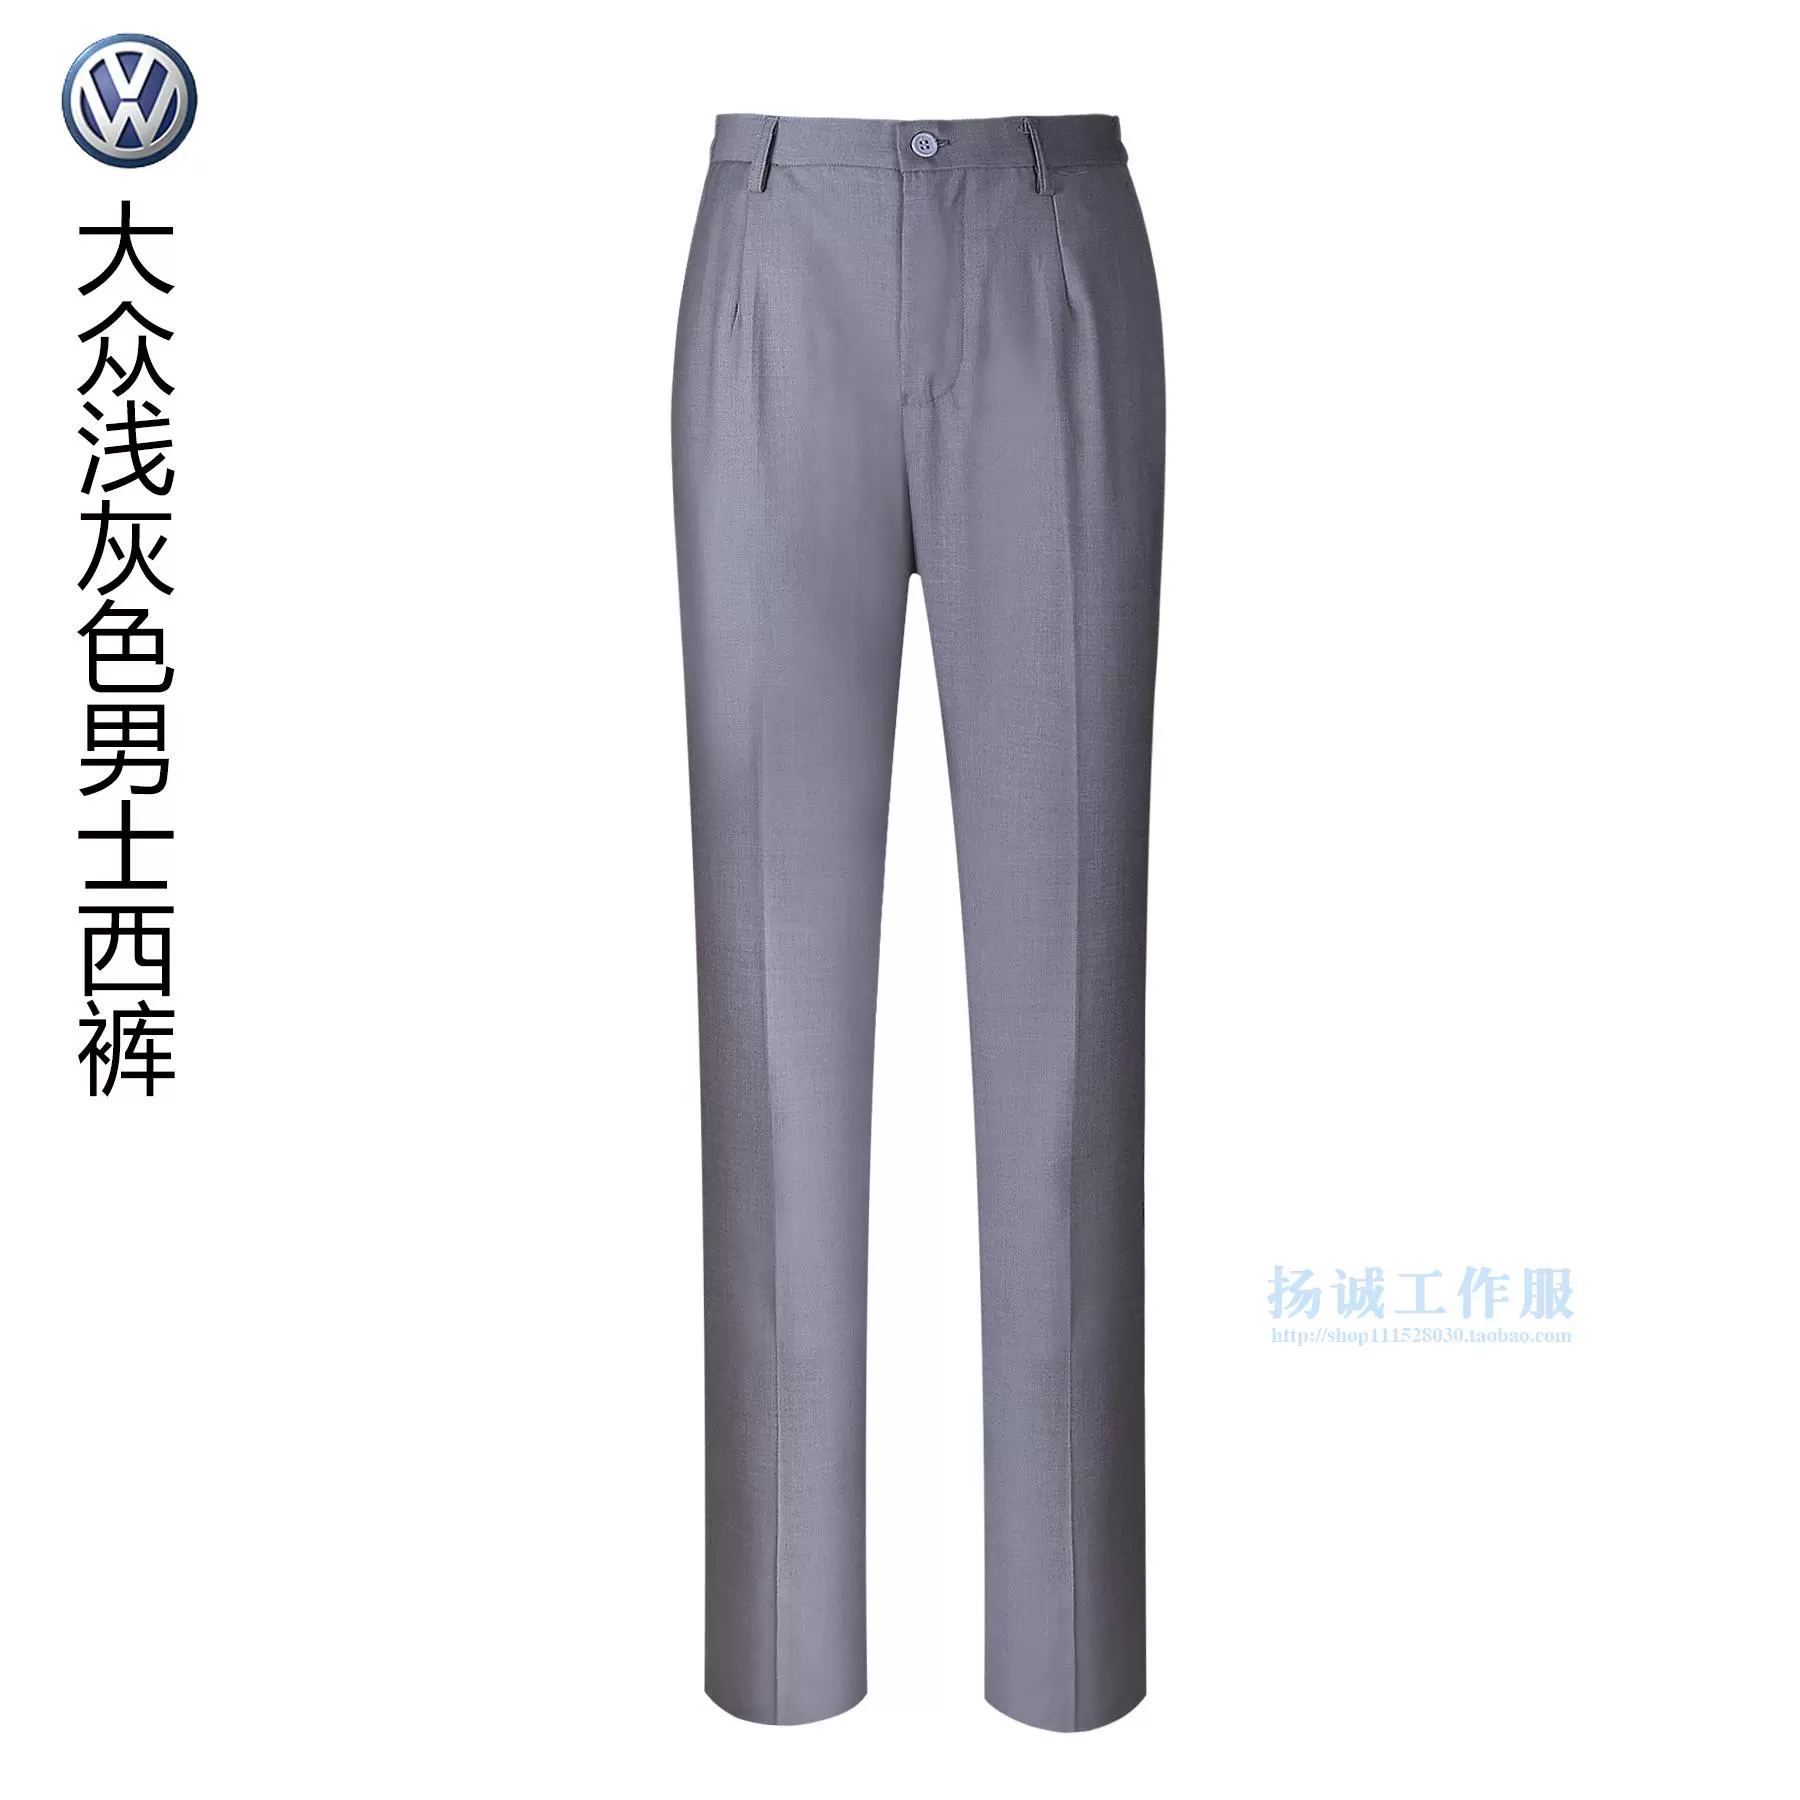 SAIC Thượng Hải Volkswagen 4s cửa hàng bán quần áo công sở phù hợp với quần nam màu xám nhạt xe bán trước quần áo làm việc quần áo phù hợp với quần - Suit phù hợp